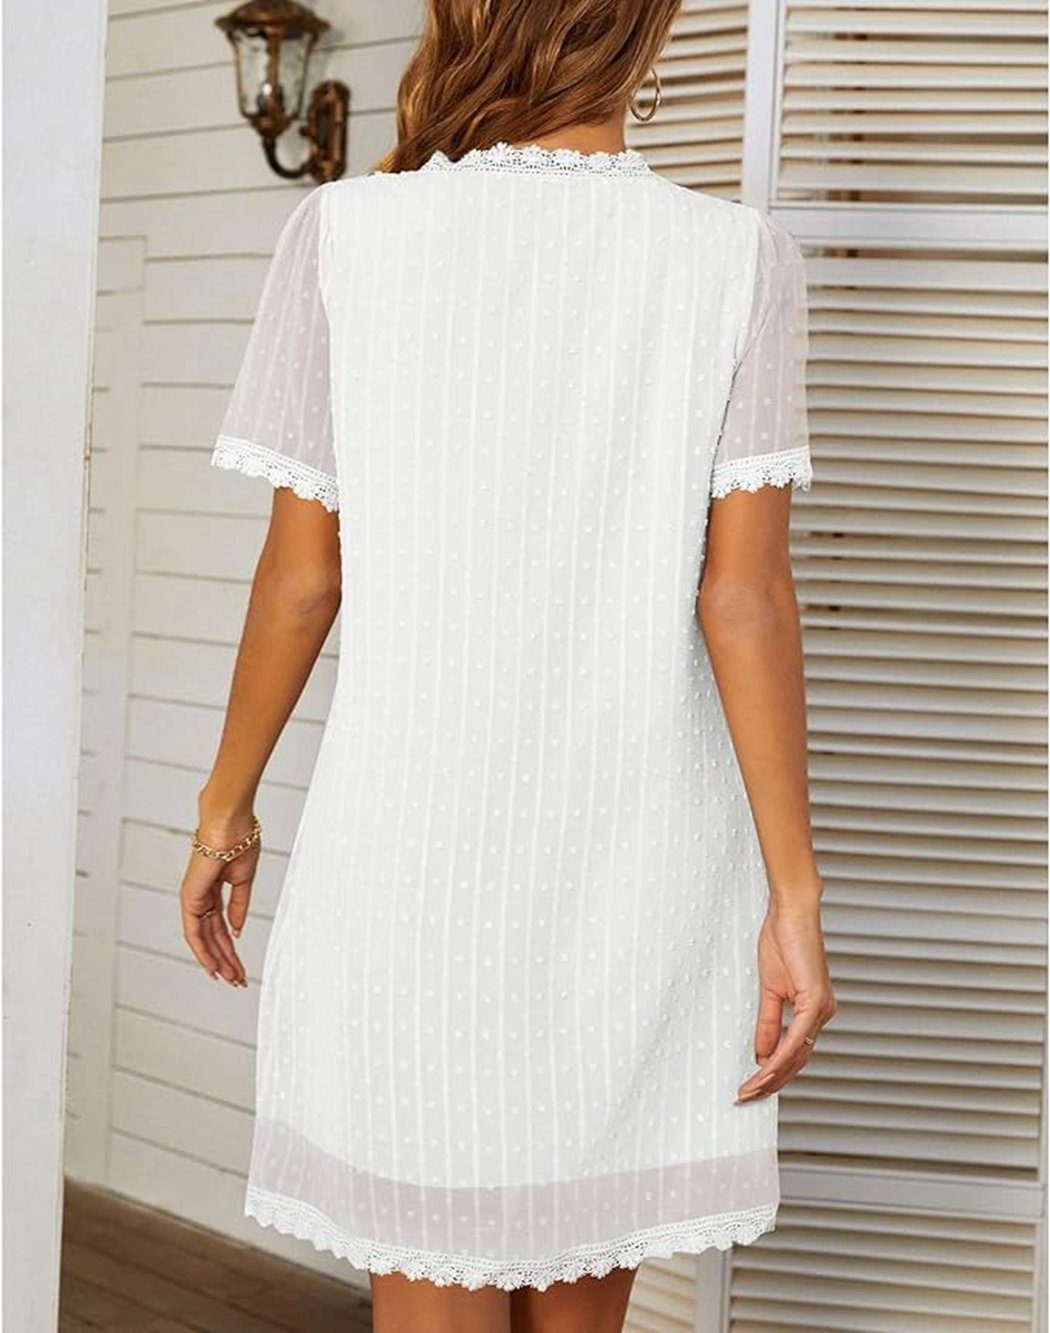 VOCTVTB Spitzenkleid, Weiß lässiges lockeres Shaping-Kleid Freizeitkleid, elegantes, Partykleid